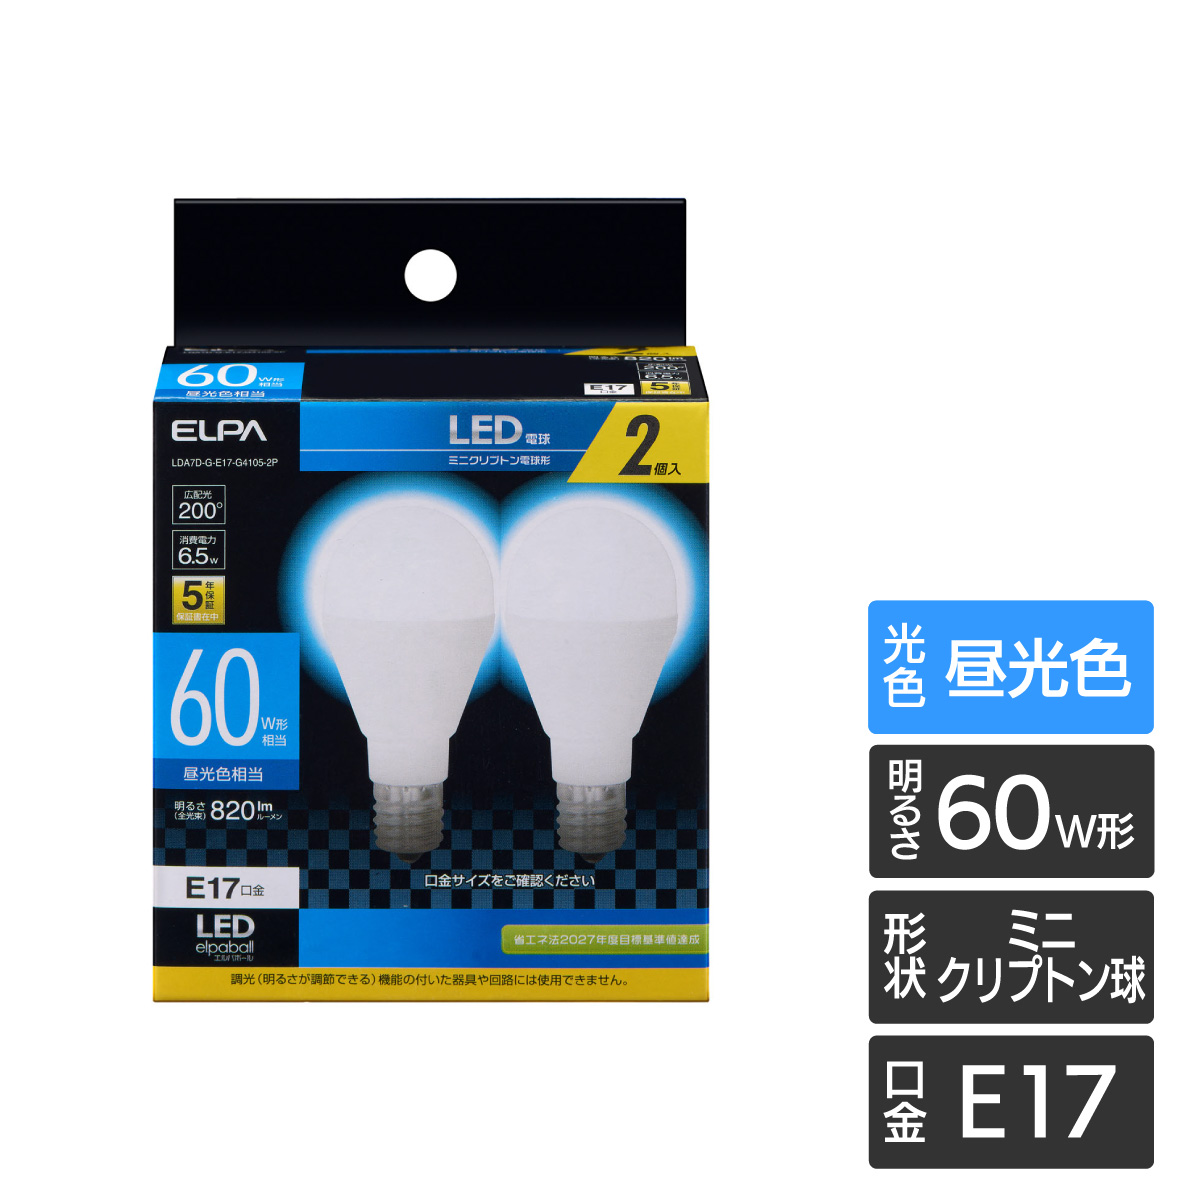 1643円 【メーカー公式ショップ】 まとめ ELPA LED電球 レフ球形 40W E26 電球色 LDR6L-H-G601